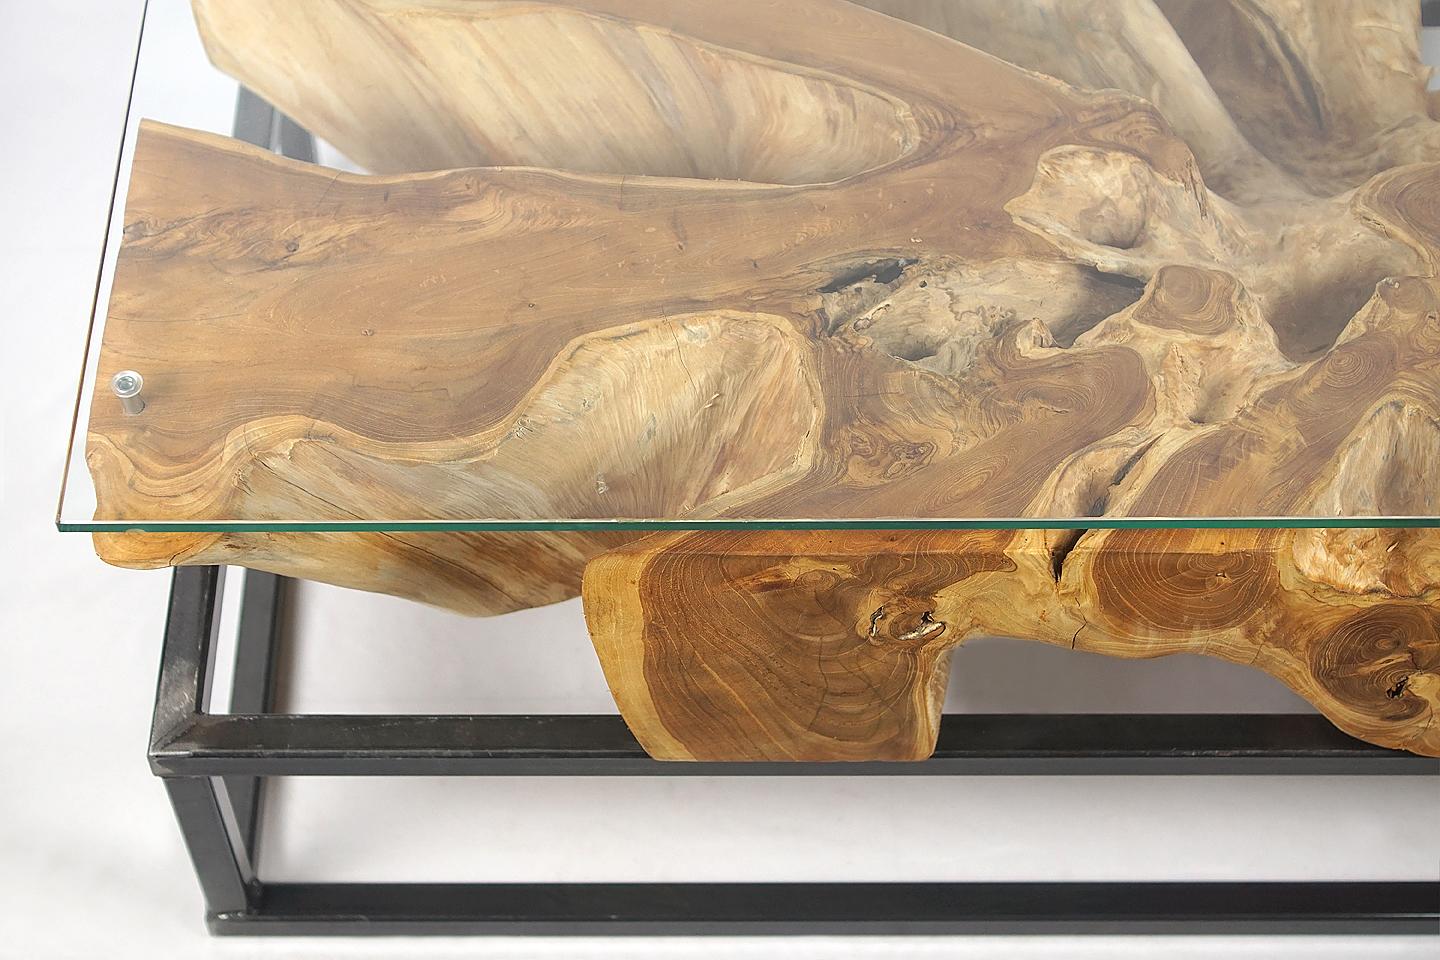 Couchtisch aus Teakwurzelholz.

Schöner organischer Teakwurzel-Couchtisch mit atemberaubenden Erosionsdetails, mit einer Platte aus gehärtetem Glas (10 mm) auf der Platte. Das Einölen der Wurzel verleiht ihr ein besonderes, einzigartiges